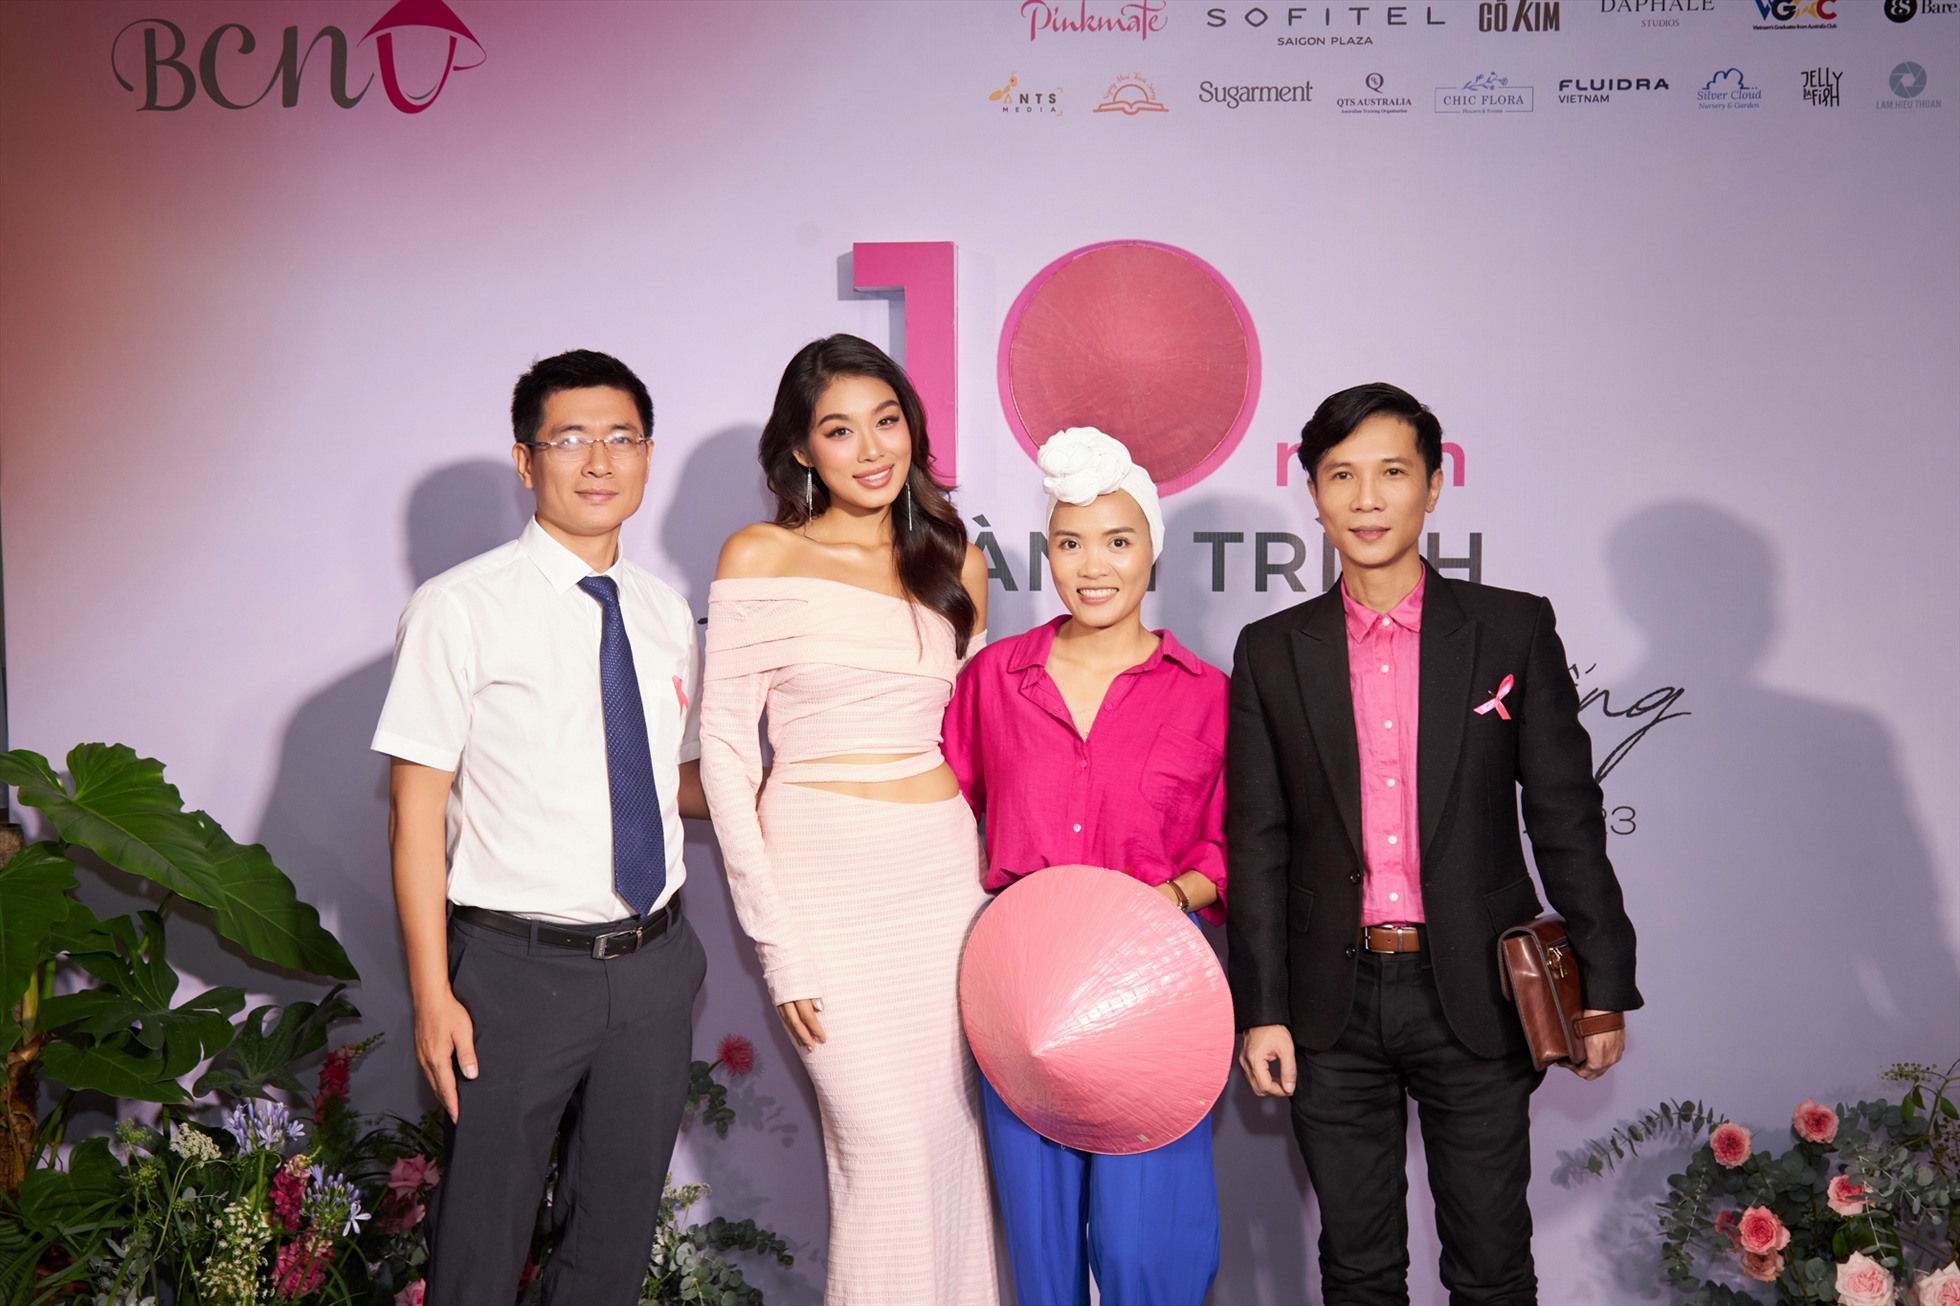 Đại sứ Thảo Nhi Lê xuất hiện rạng rỡ trong kỷ niệm 10 năm tổ chức mạng lưới ung thư vú Việt Nam